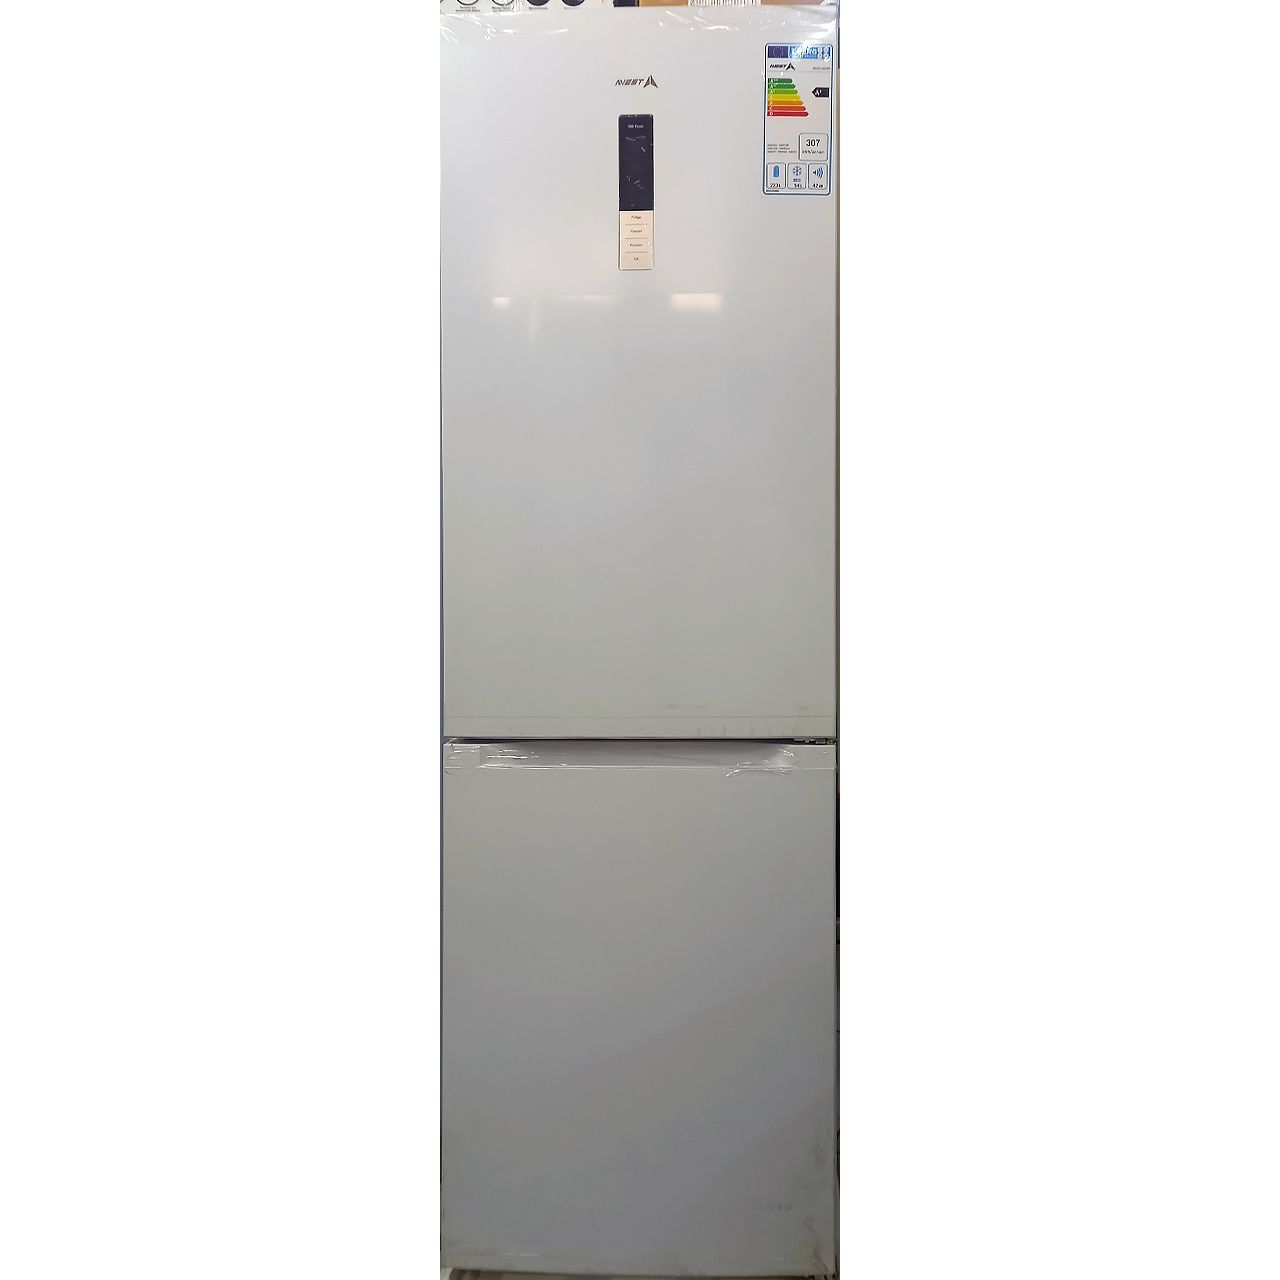 Холодильник двухкамерный Avest 317 литров